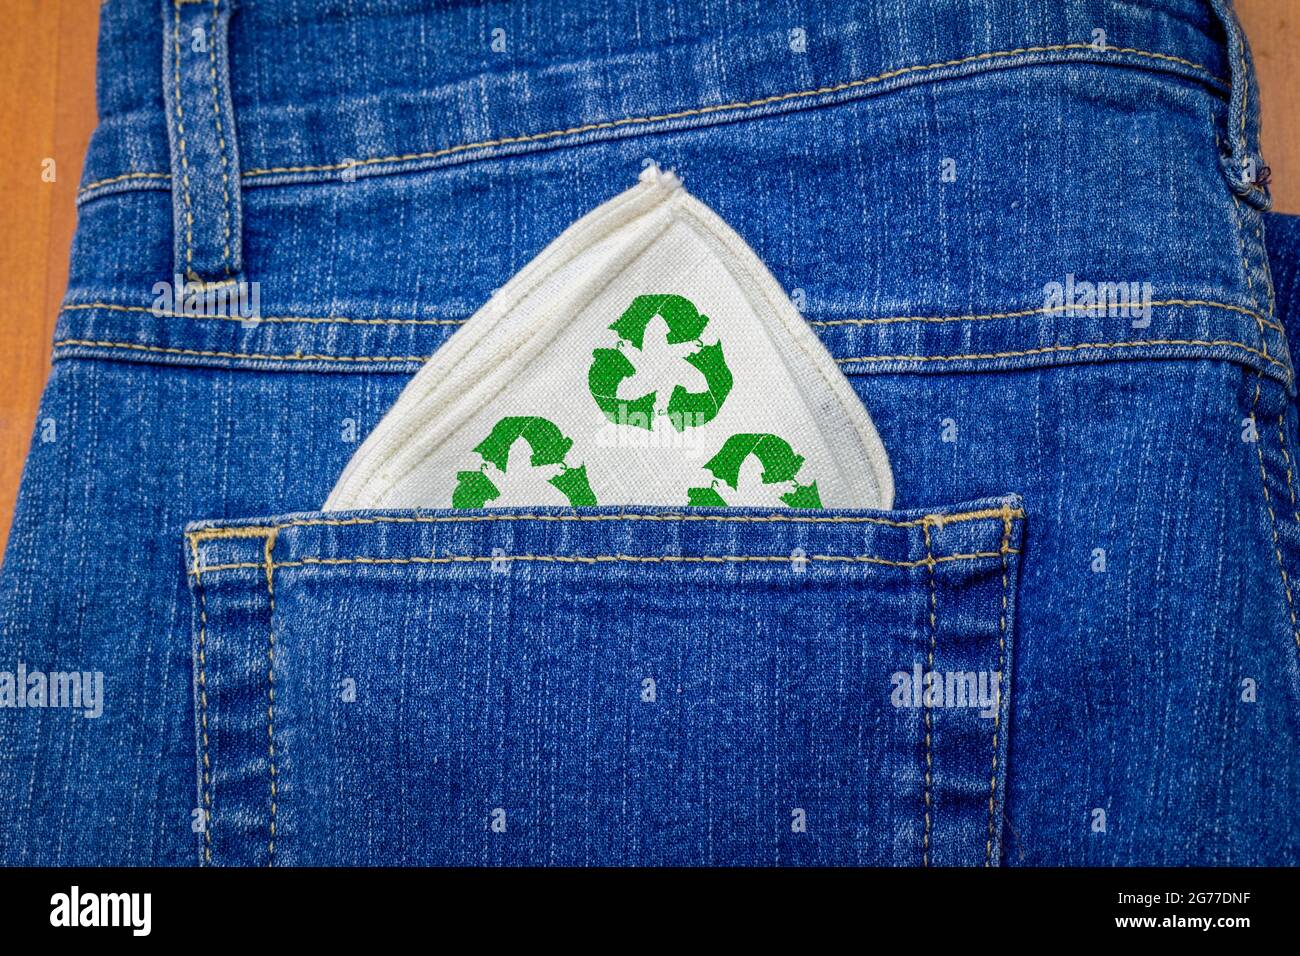 Tessuto riutilizzabile Hanky con icona di ricicla tessile nella tasca posteriore dei jeans, fazzoletto riutilizzabile lavabile riducono i consumi e gli sprechi Foto Stock